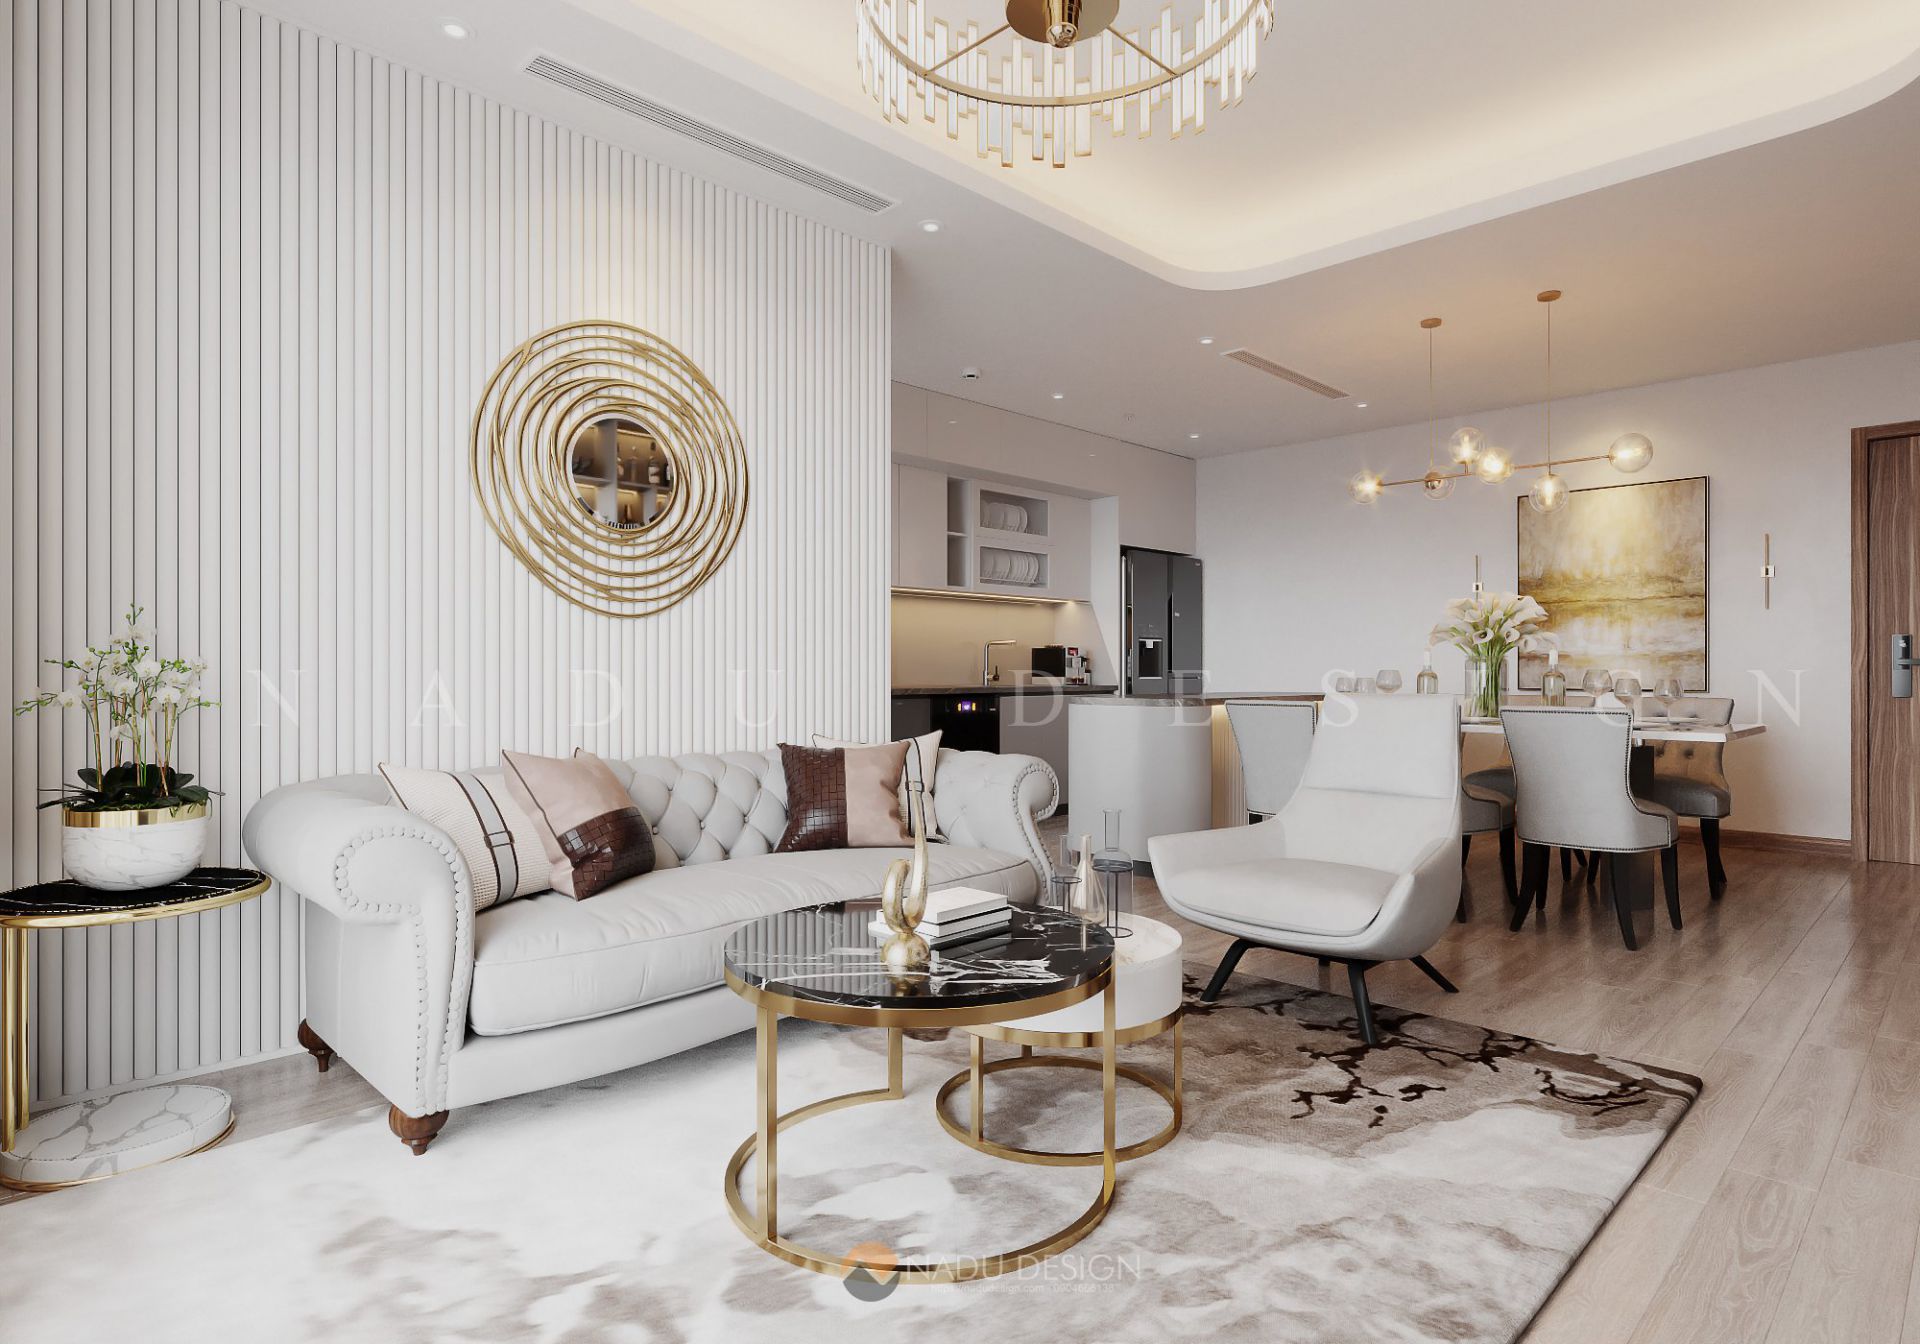 23 Mẫu thiết kế nội thất chung cư đẹp trong năm 2020  Nội Thất ACADO